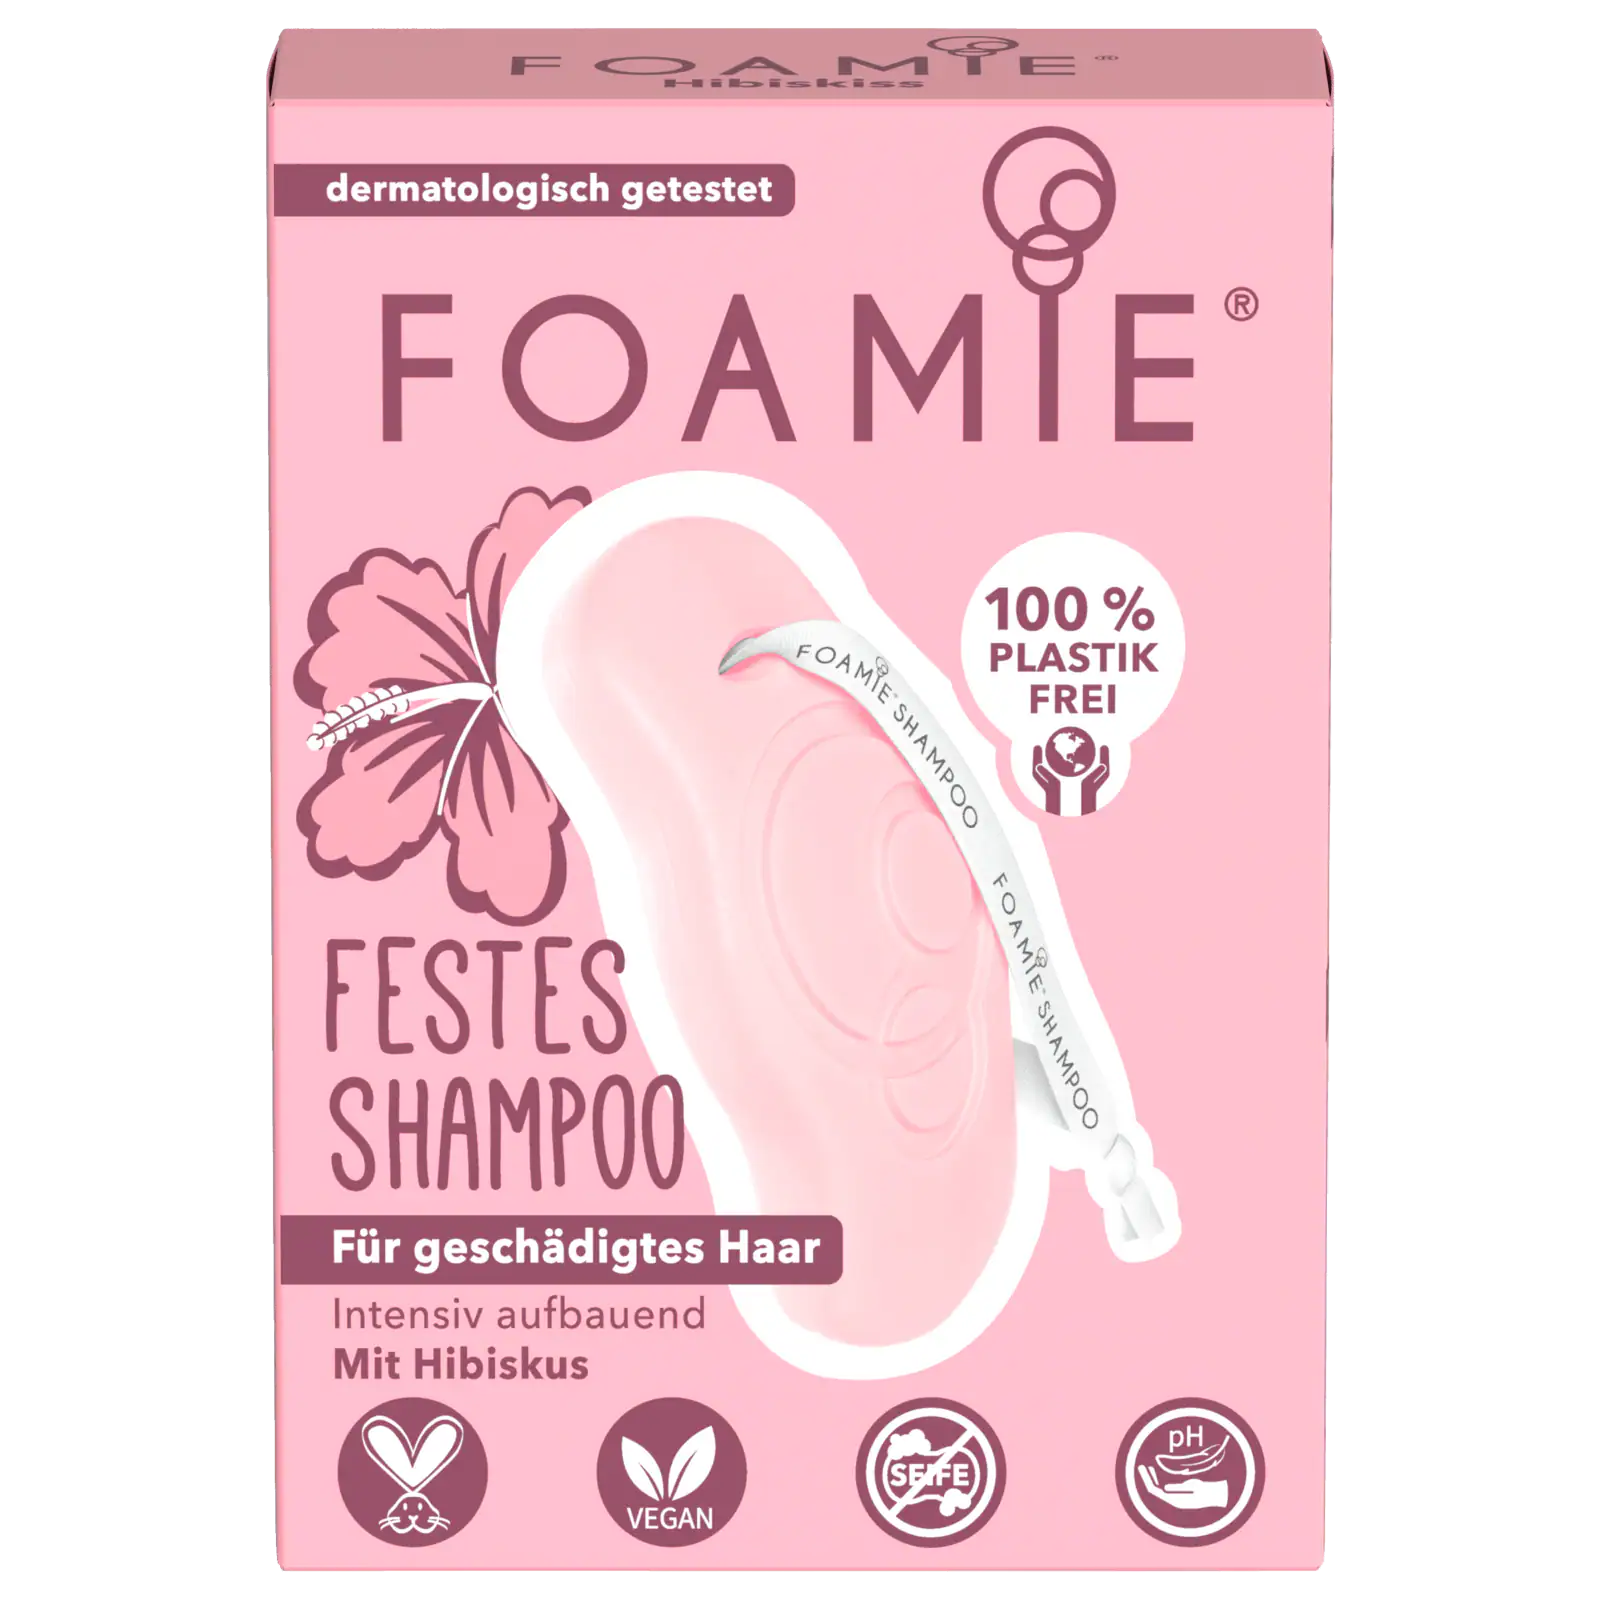 Foamie festes Shampoo geschädigtes Haar Hibiskus 80g bei REWE online  bestellen!